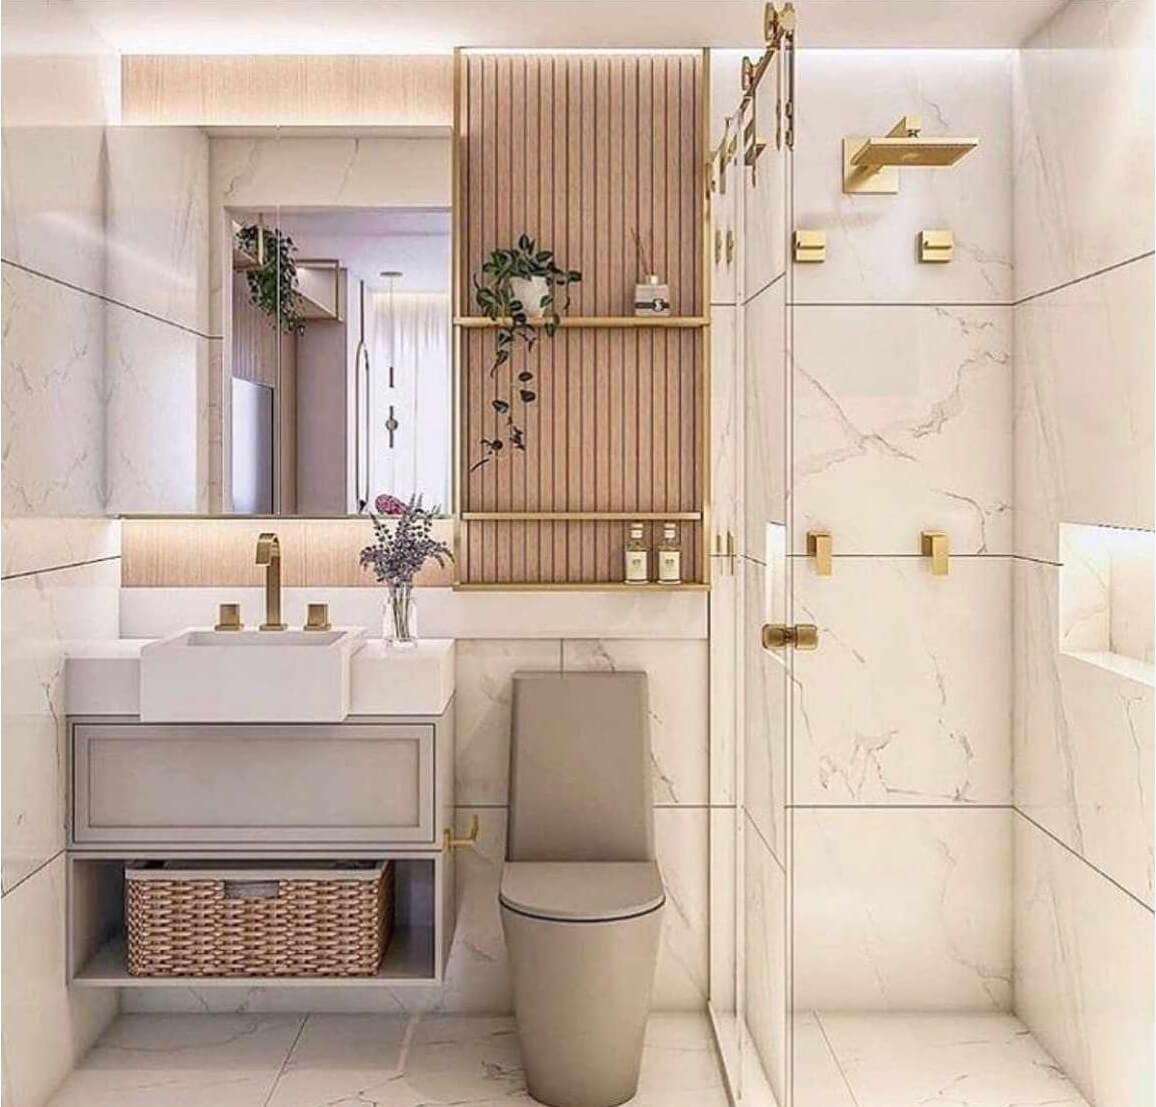 Hiện nay, phong cách thiết kế phòng tắm đẹp đánh dấu bởi các tông màu sáng và đa dạng sản phẩm nội thất. Với sự phát triển của công nghệ, những sản phẩm trang trí thông minh, tiện lợi đáp ứng tối đa nhu cầu của bạn. Cùng với sự phá cách, phong cách thiết kế phòng tắm đẹp thực sự trở nên đặc biệt hơn bao giờ hết.